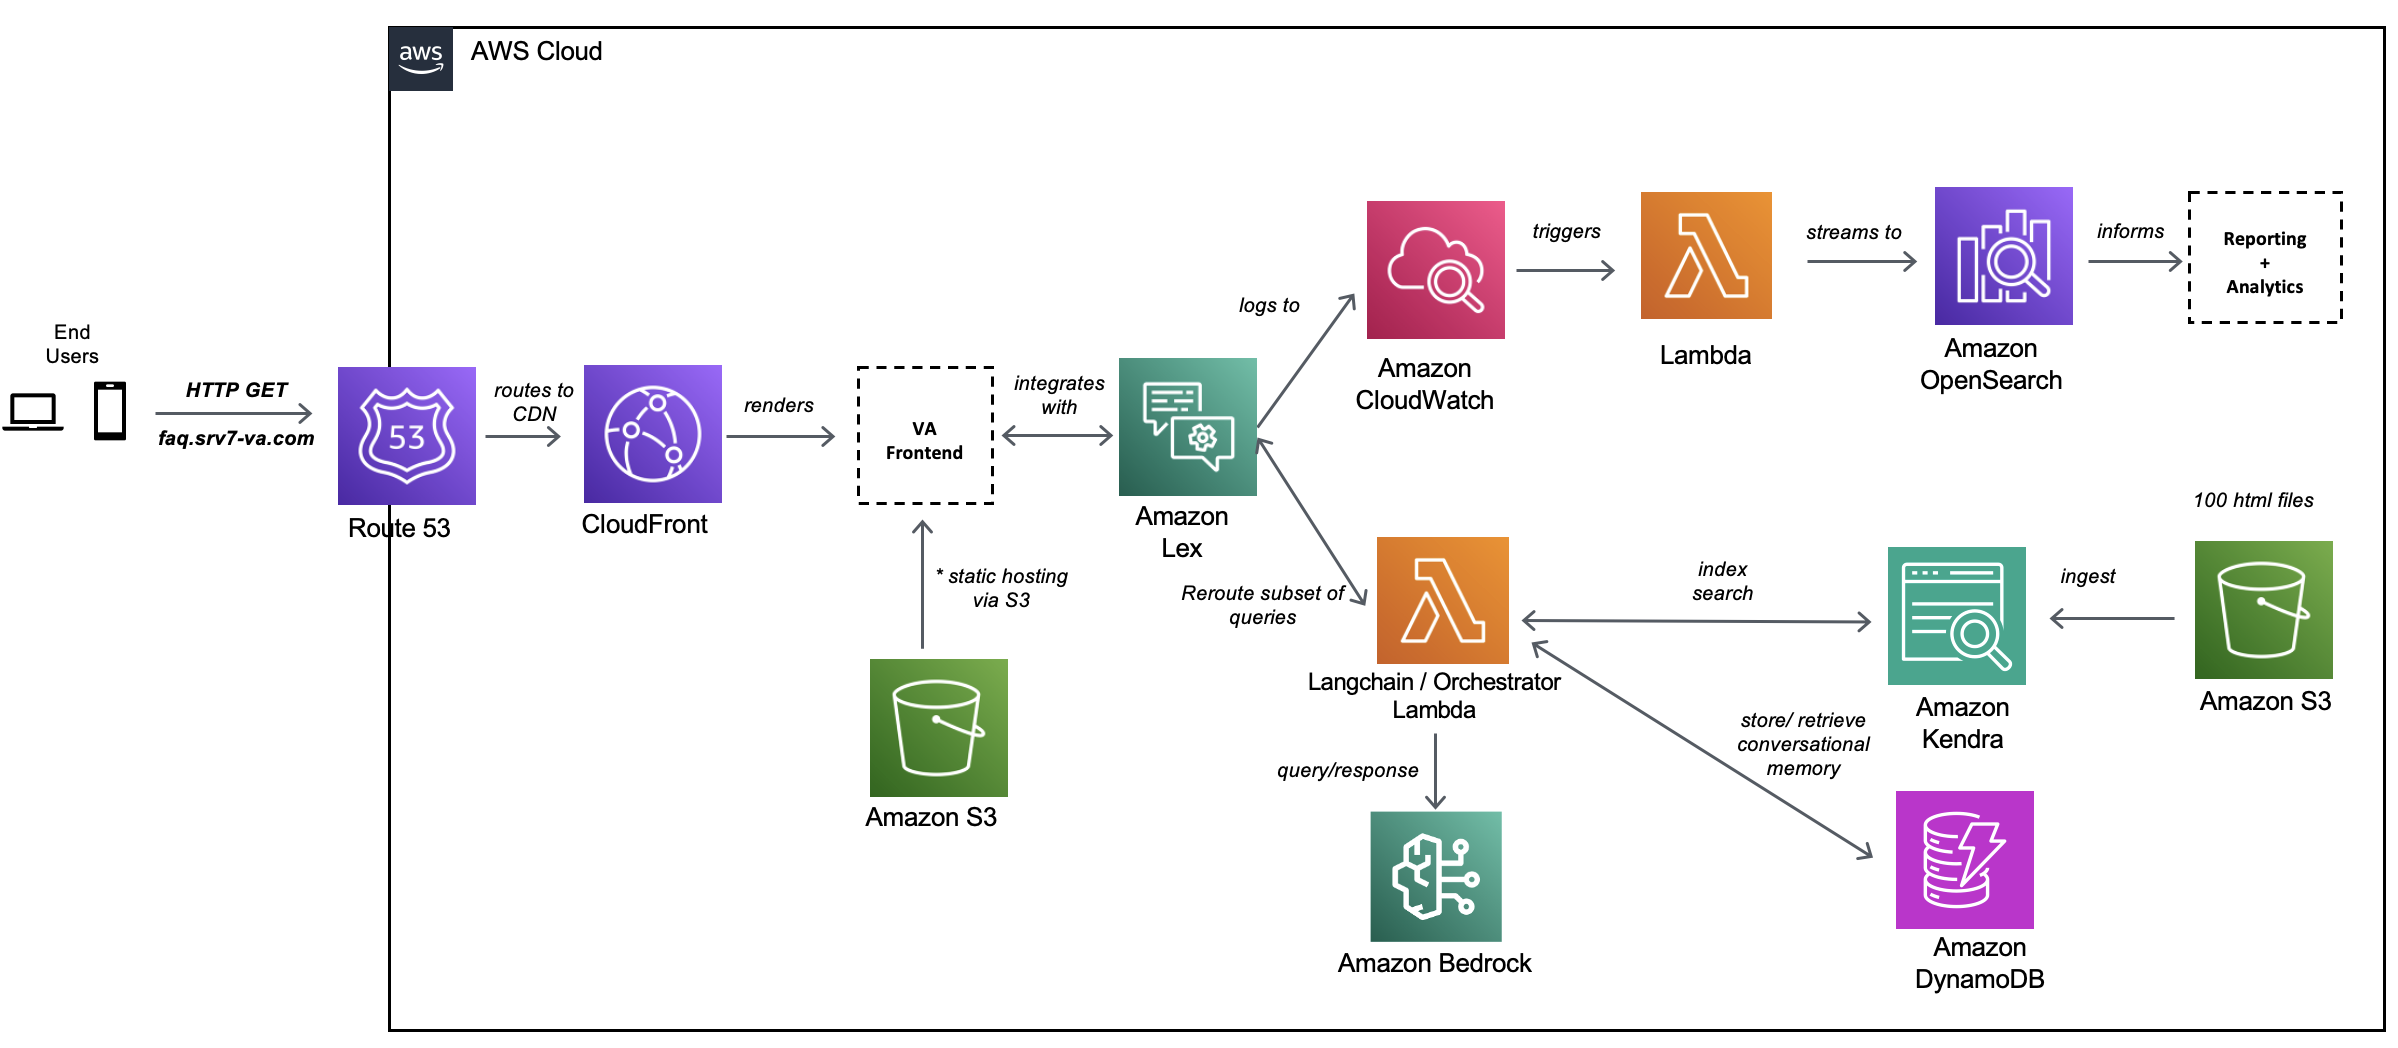 Accenture creează o soluție Knowledge Assist folosind servicii AI generative pe AWS | Amazon Web Services